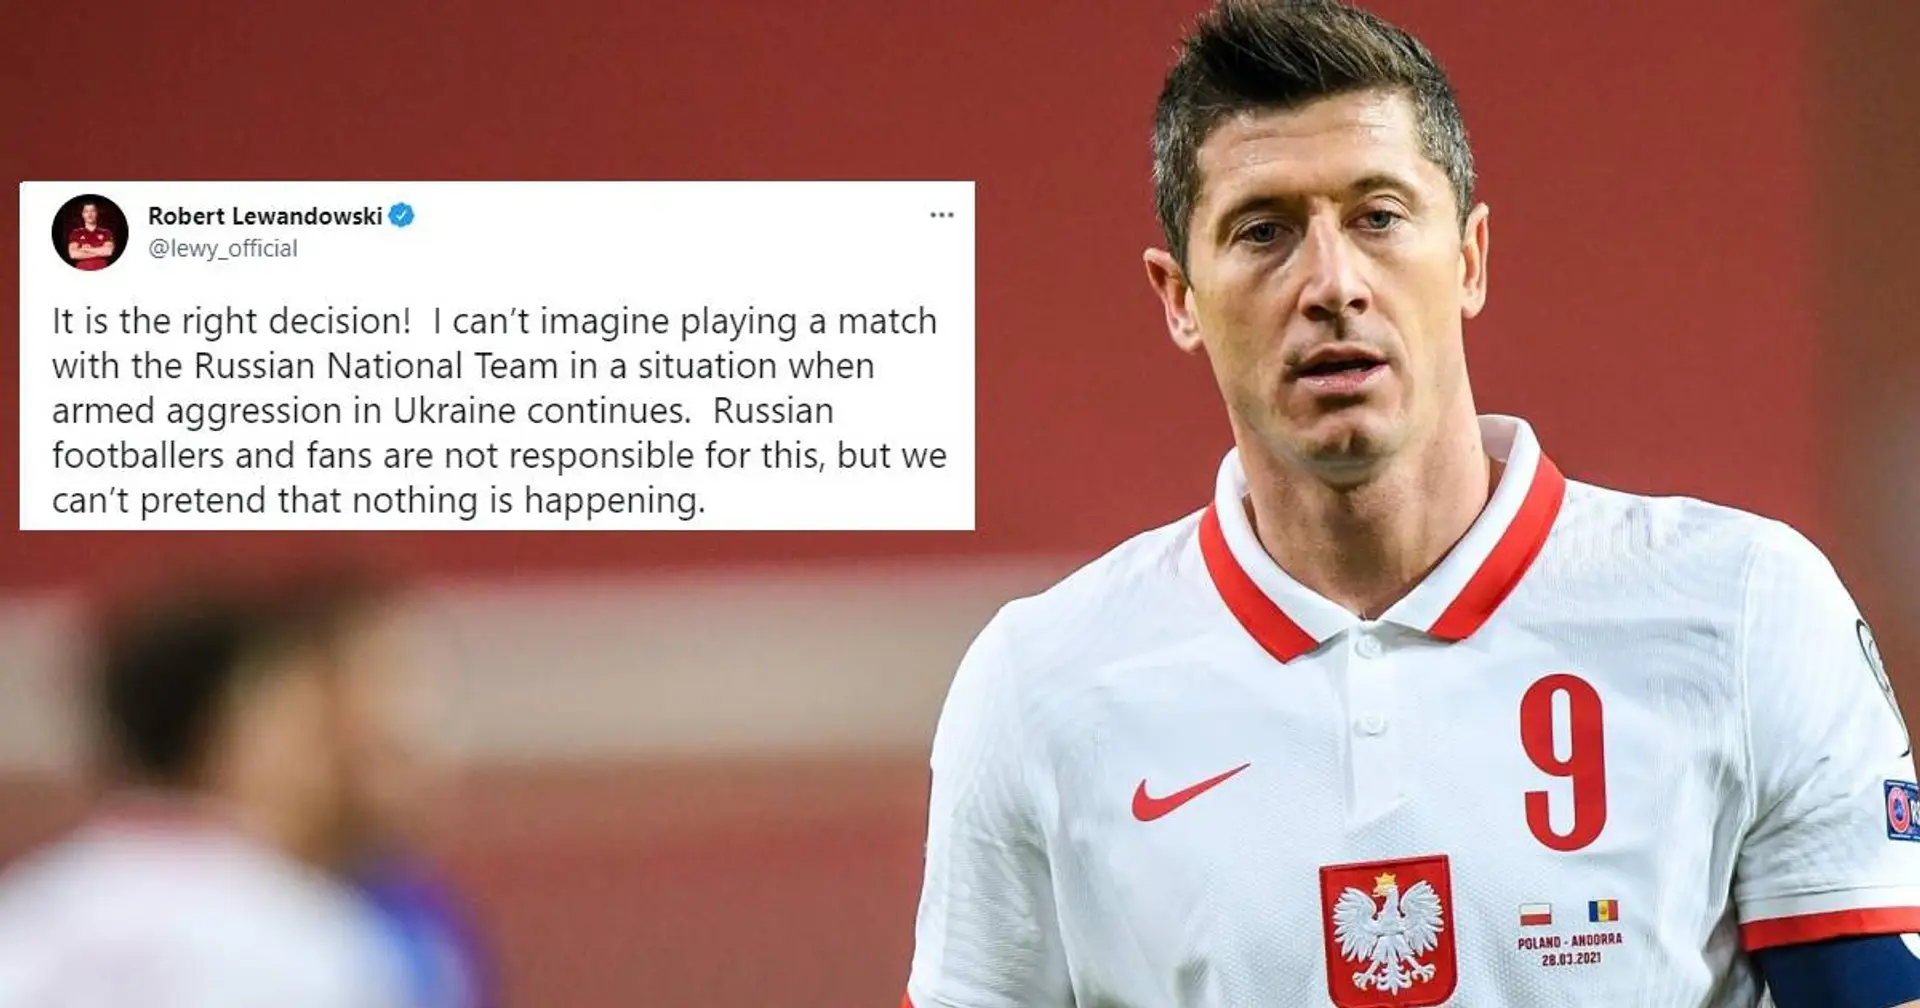 Polen verzichtet darauf, gegen Russland zu spielen, Lewandowski begrüßt das: "Richtige Entscheidung!"